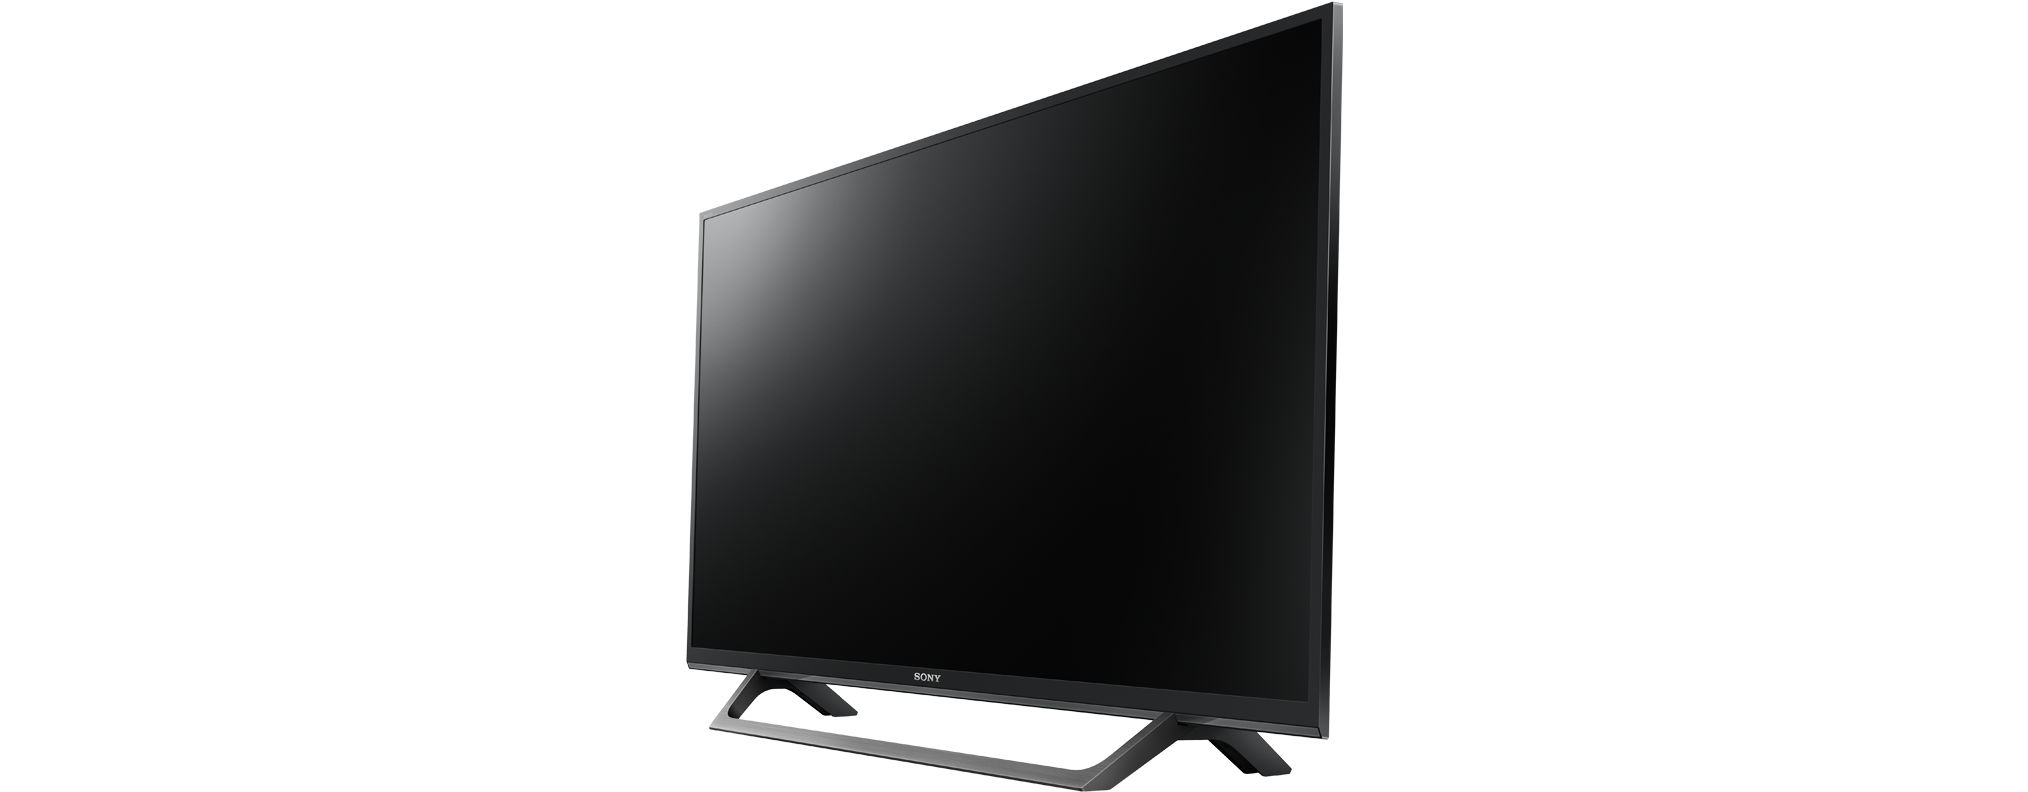 SONY / Linux) TV LED KDL-32W6605 (Flat, TV, SMART Zoll HD-ready, 32 80 cm,